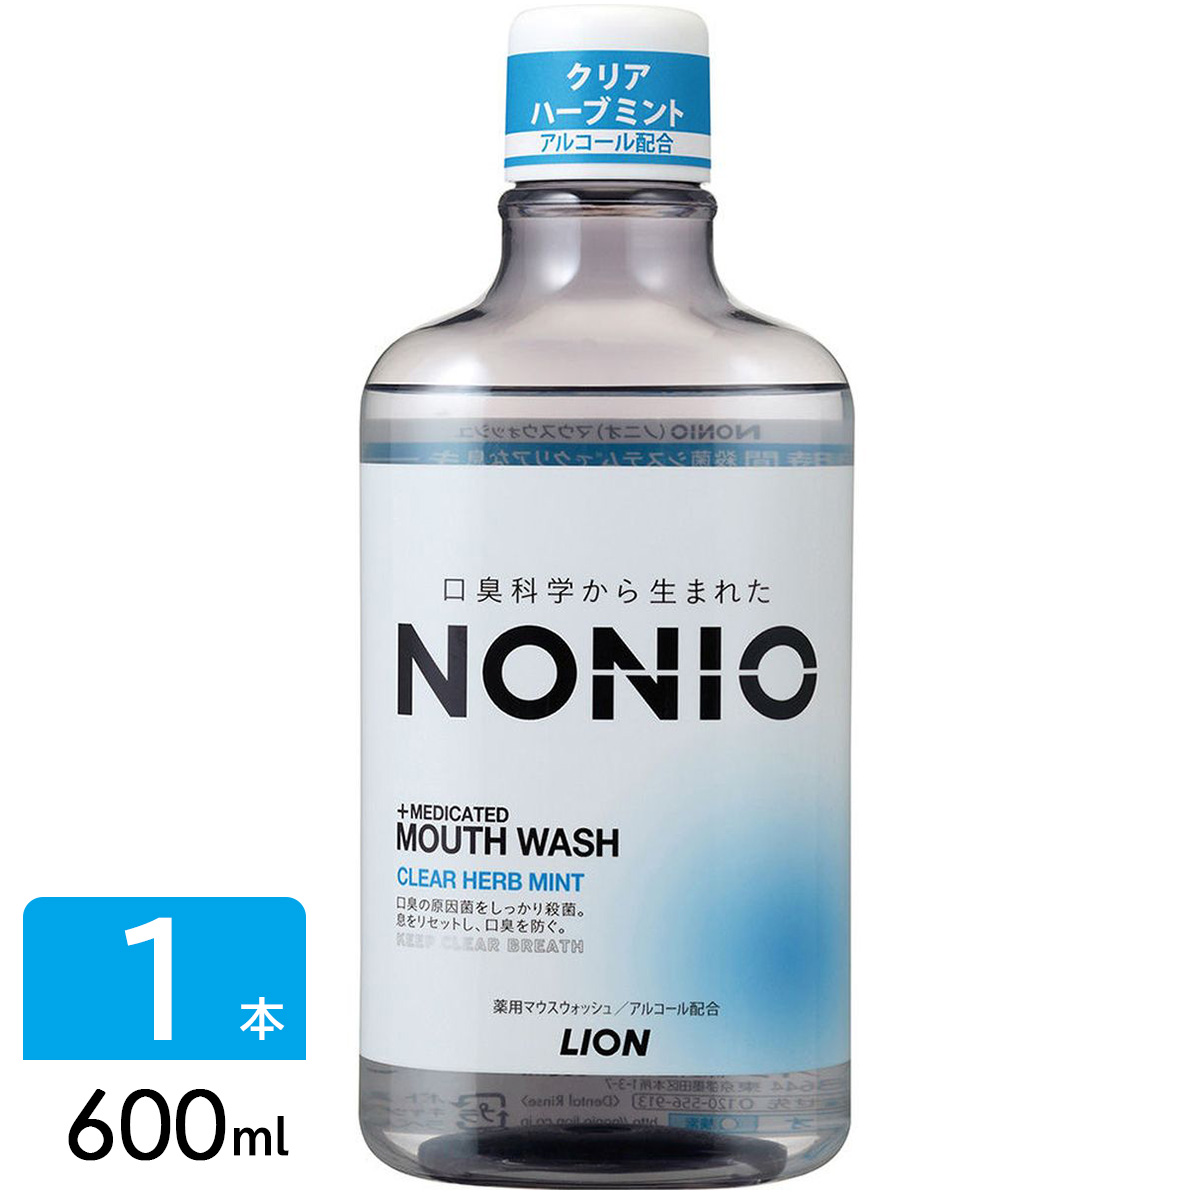 NONIO ノニオ マウスウォッシュ 洗口液 アルコール クリアハーブミント 600ml